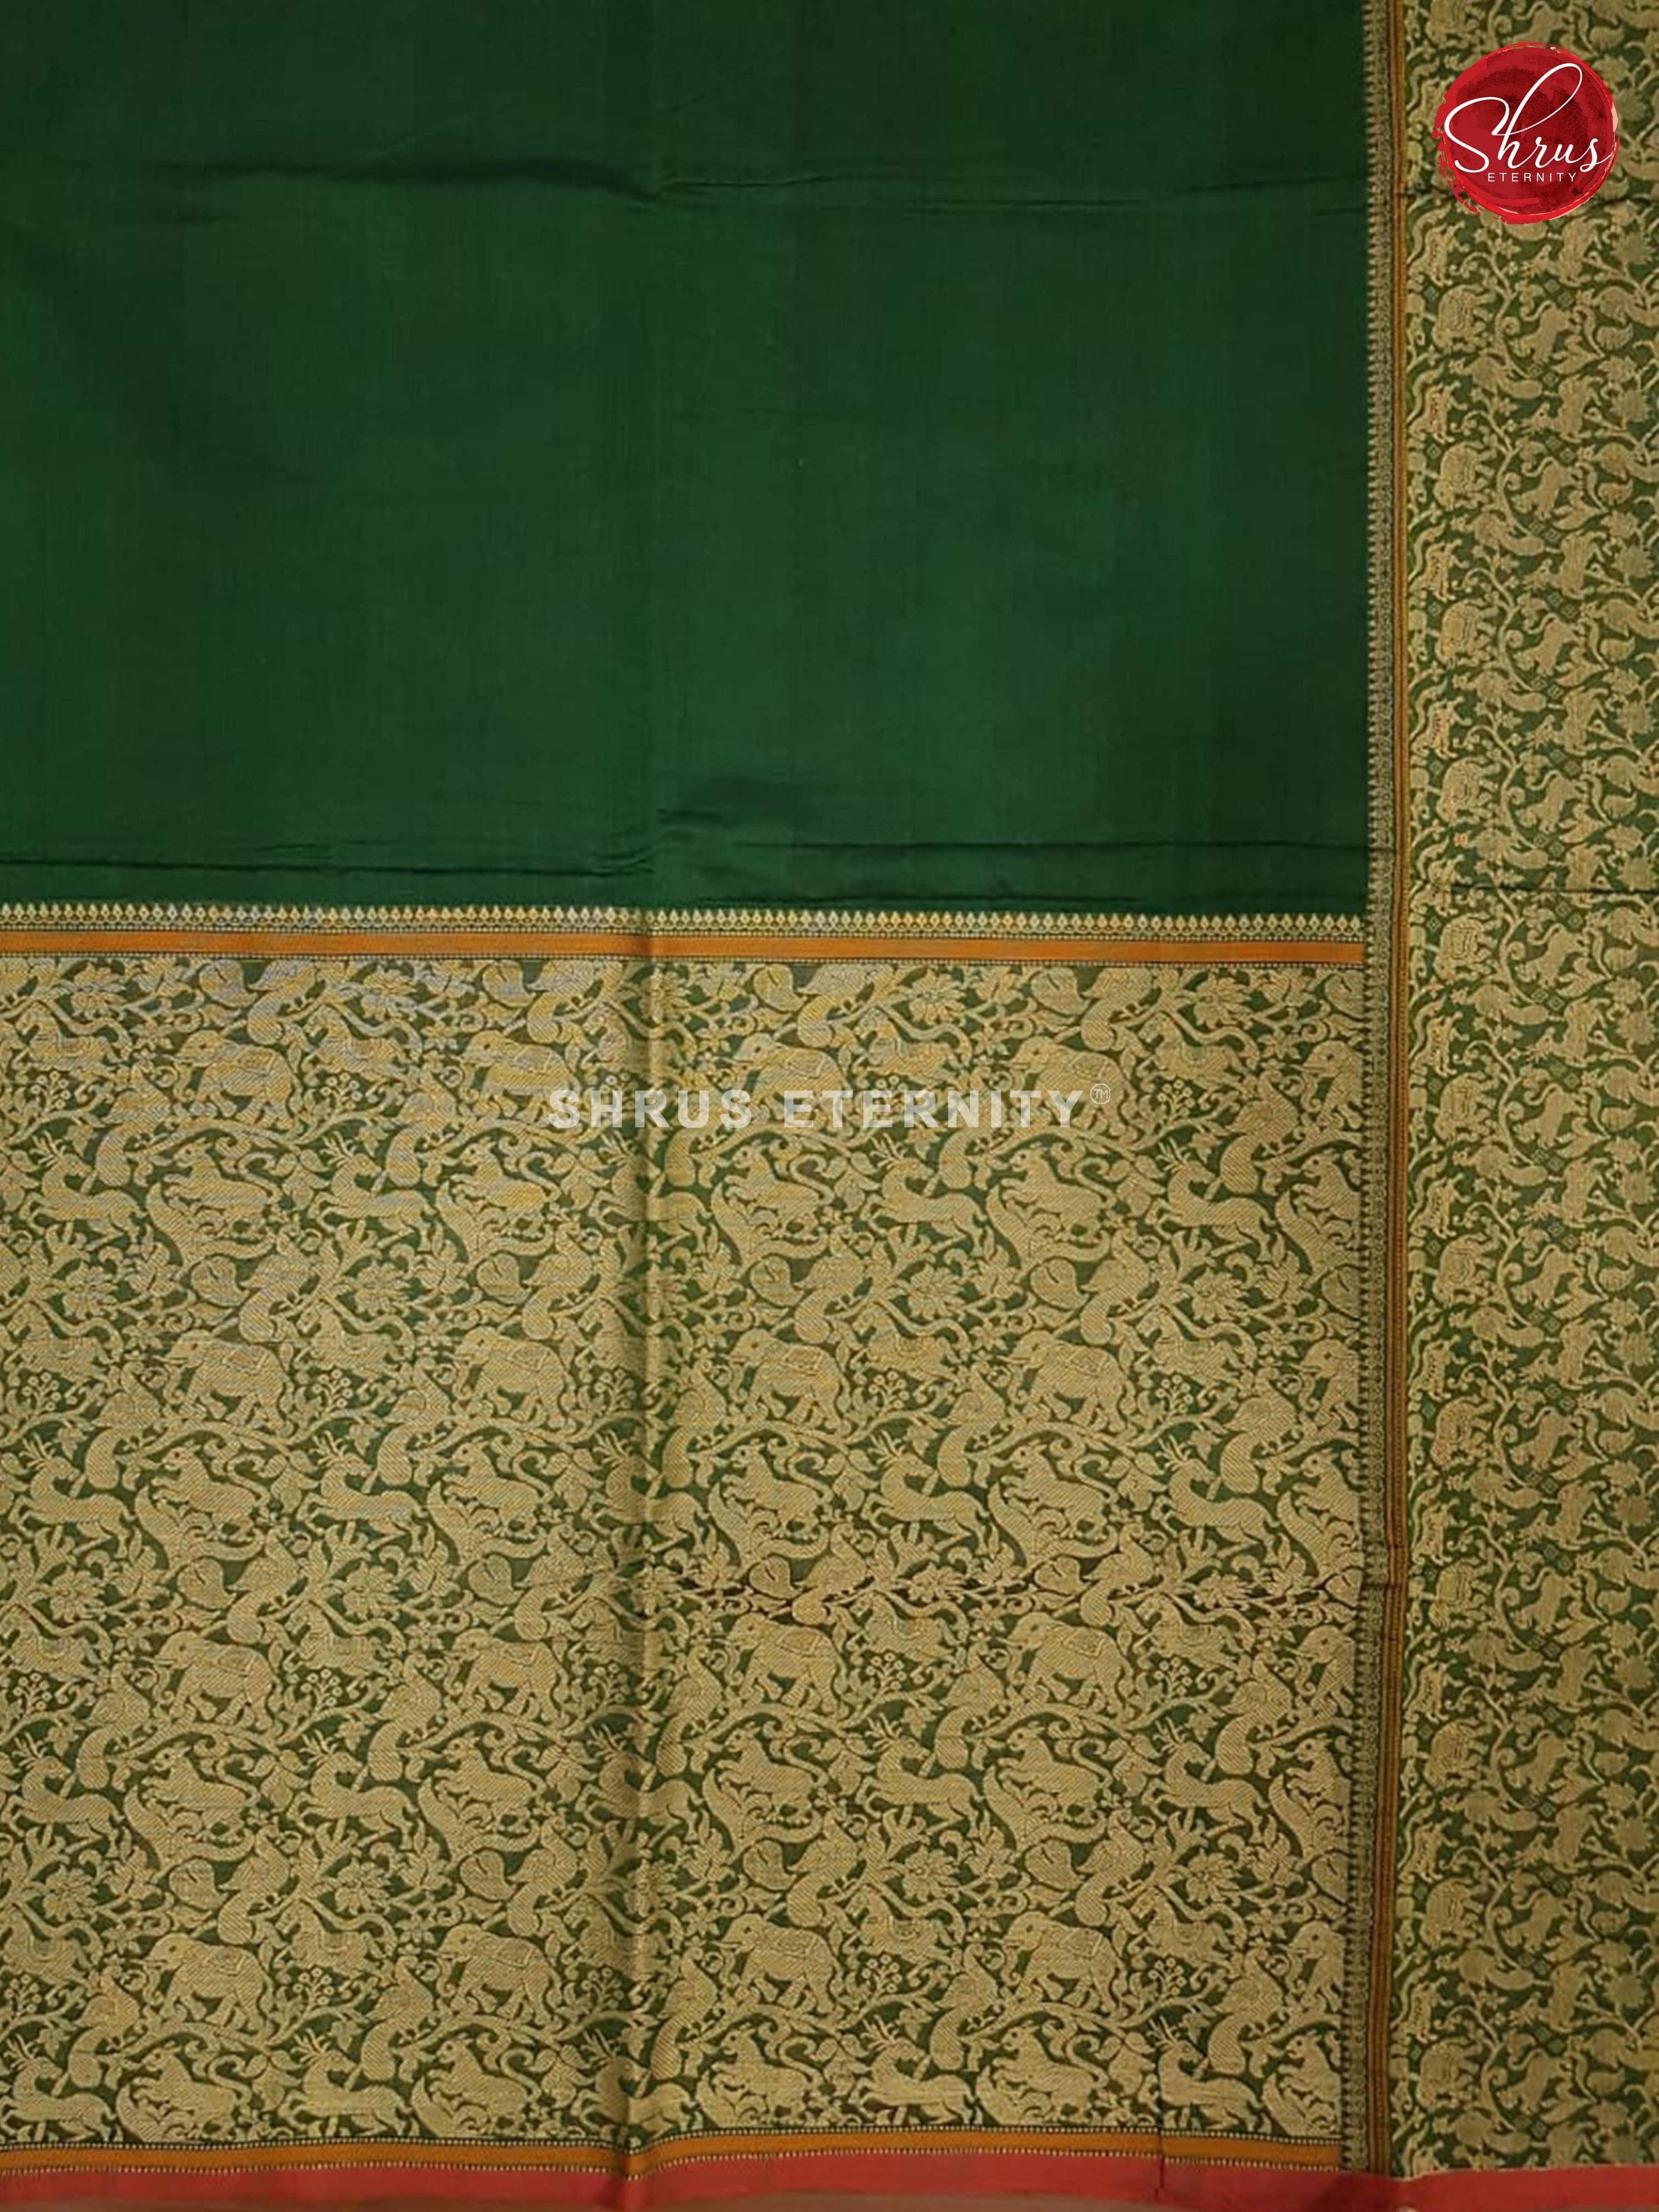 Green(Single Tone)  - Kanchi Cotton - Shop on ShrusEternity.com